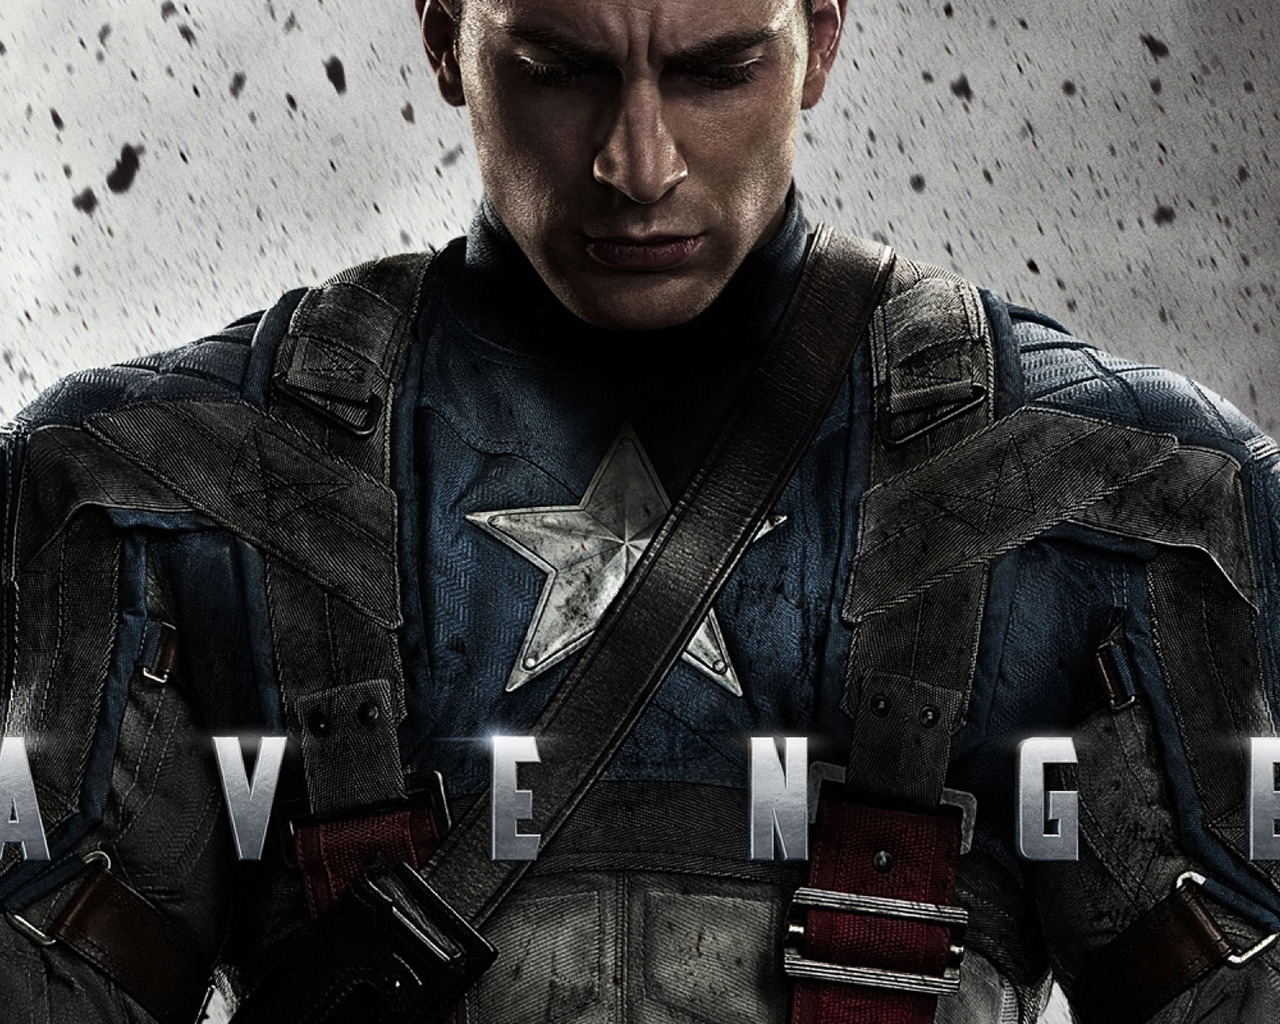 Avenger Captain America for 1280 x 1024 resolution